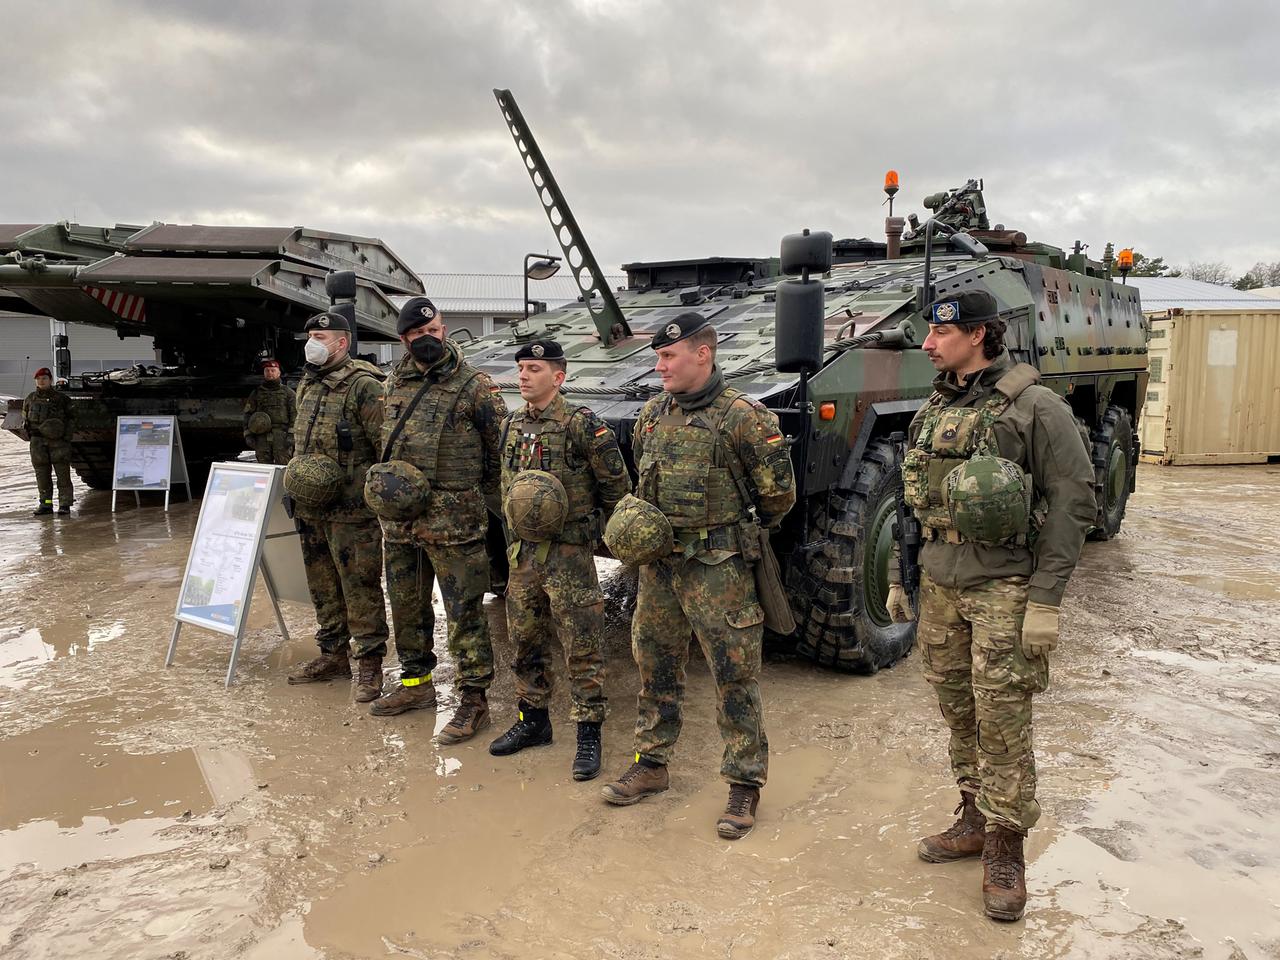 Deutsche und niederländische Soldaten (r) stehen als gemischte Besatzung vor dem gepanzerten Truppentransporter "Boxer", der zur Ausrüstung des Nato-Gefechtsverbandes in Litauen gehört.